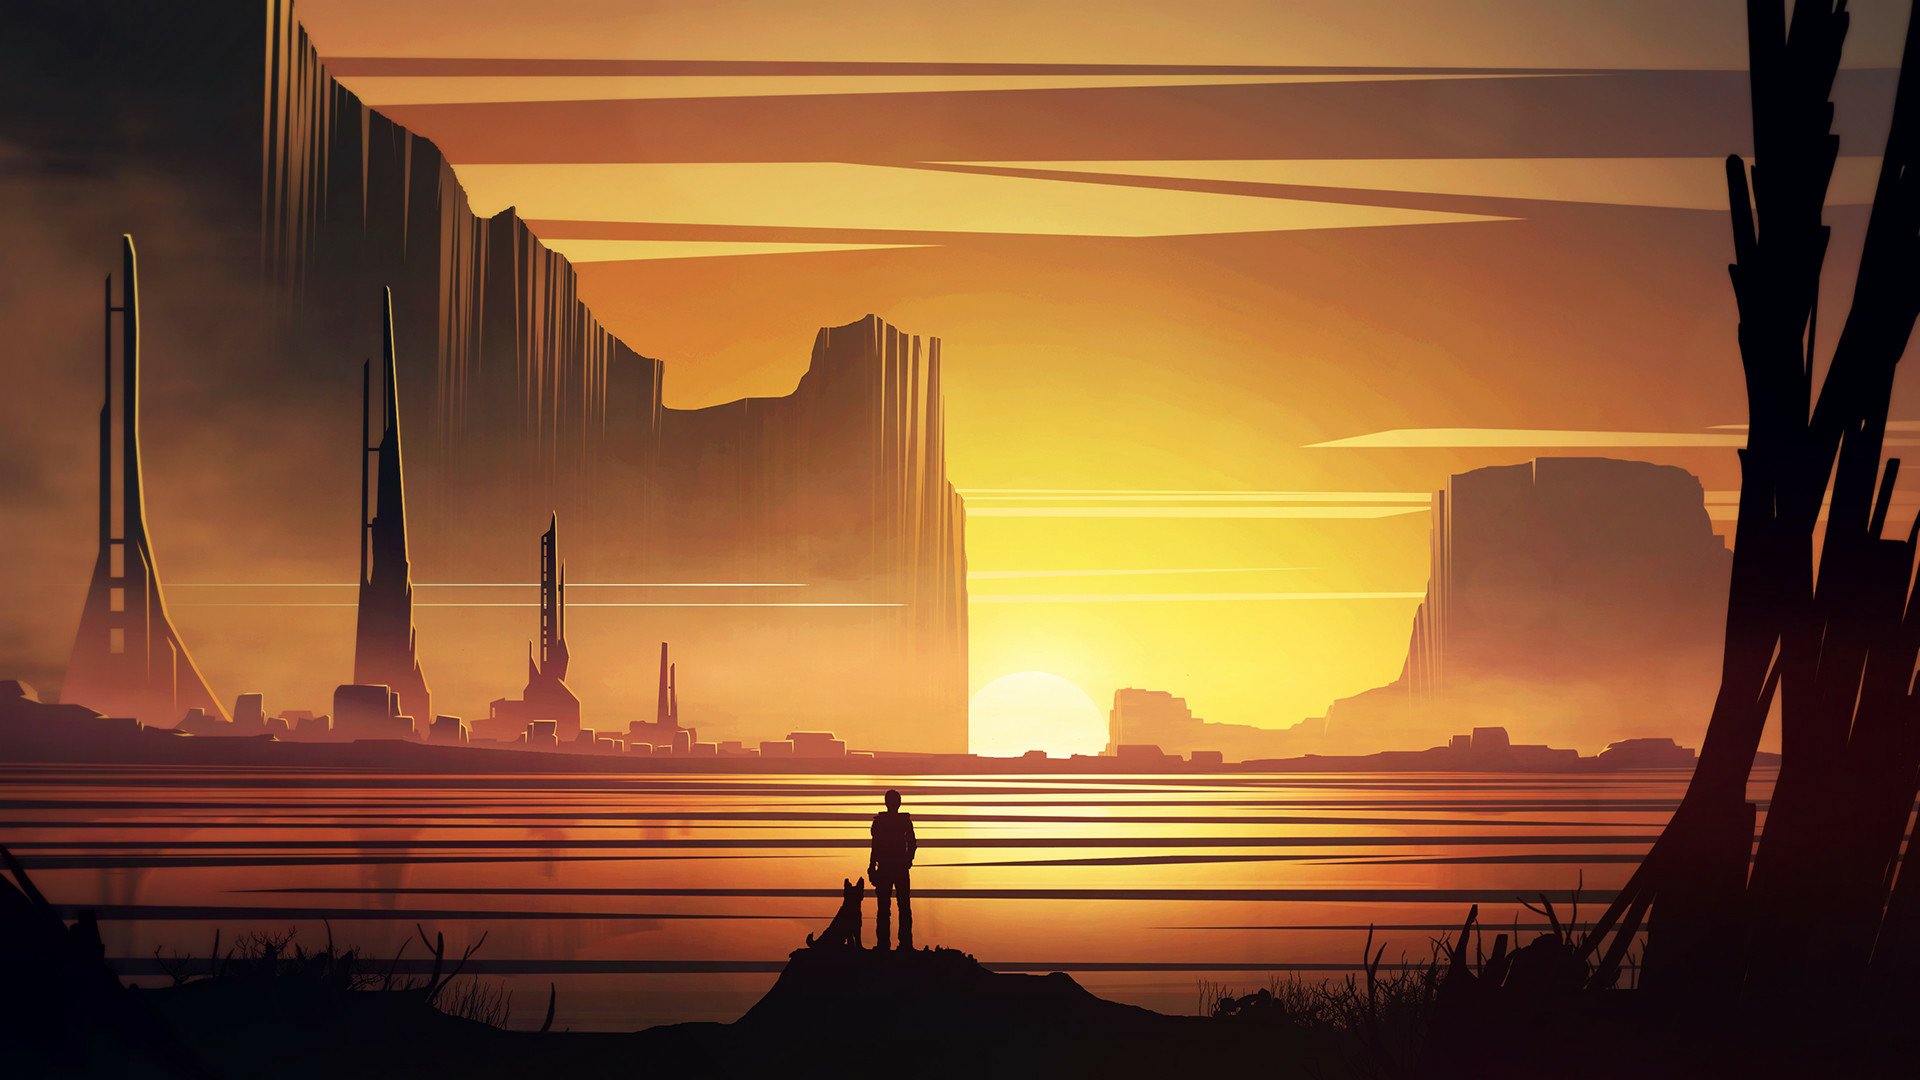 Sci Fi Landscape HD Wallpaper by Michal Kváč